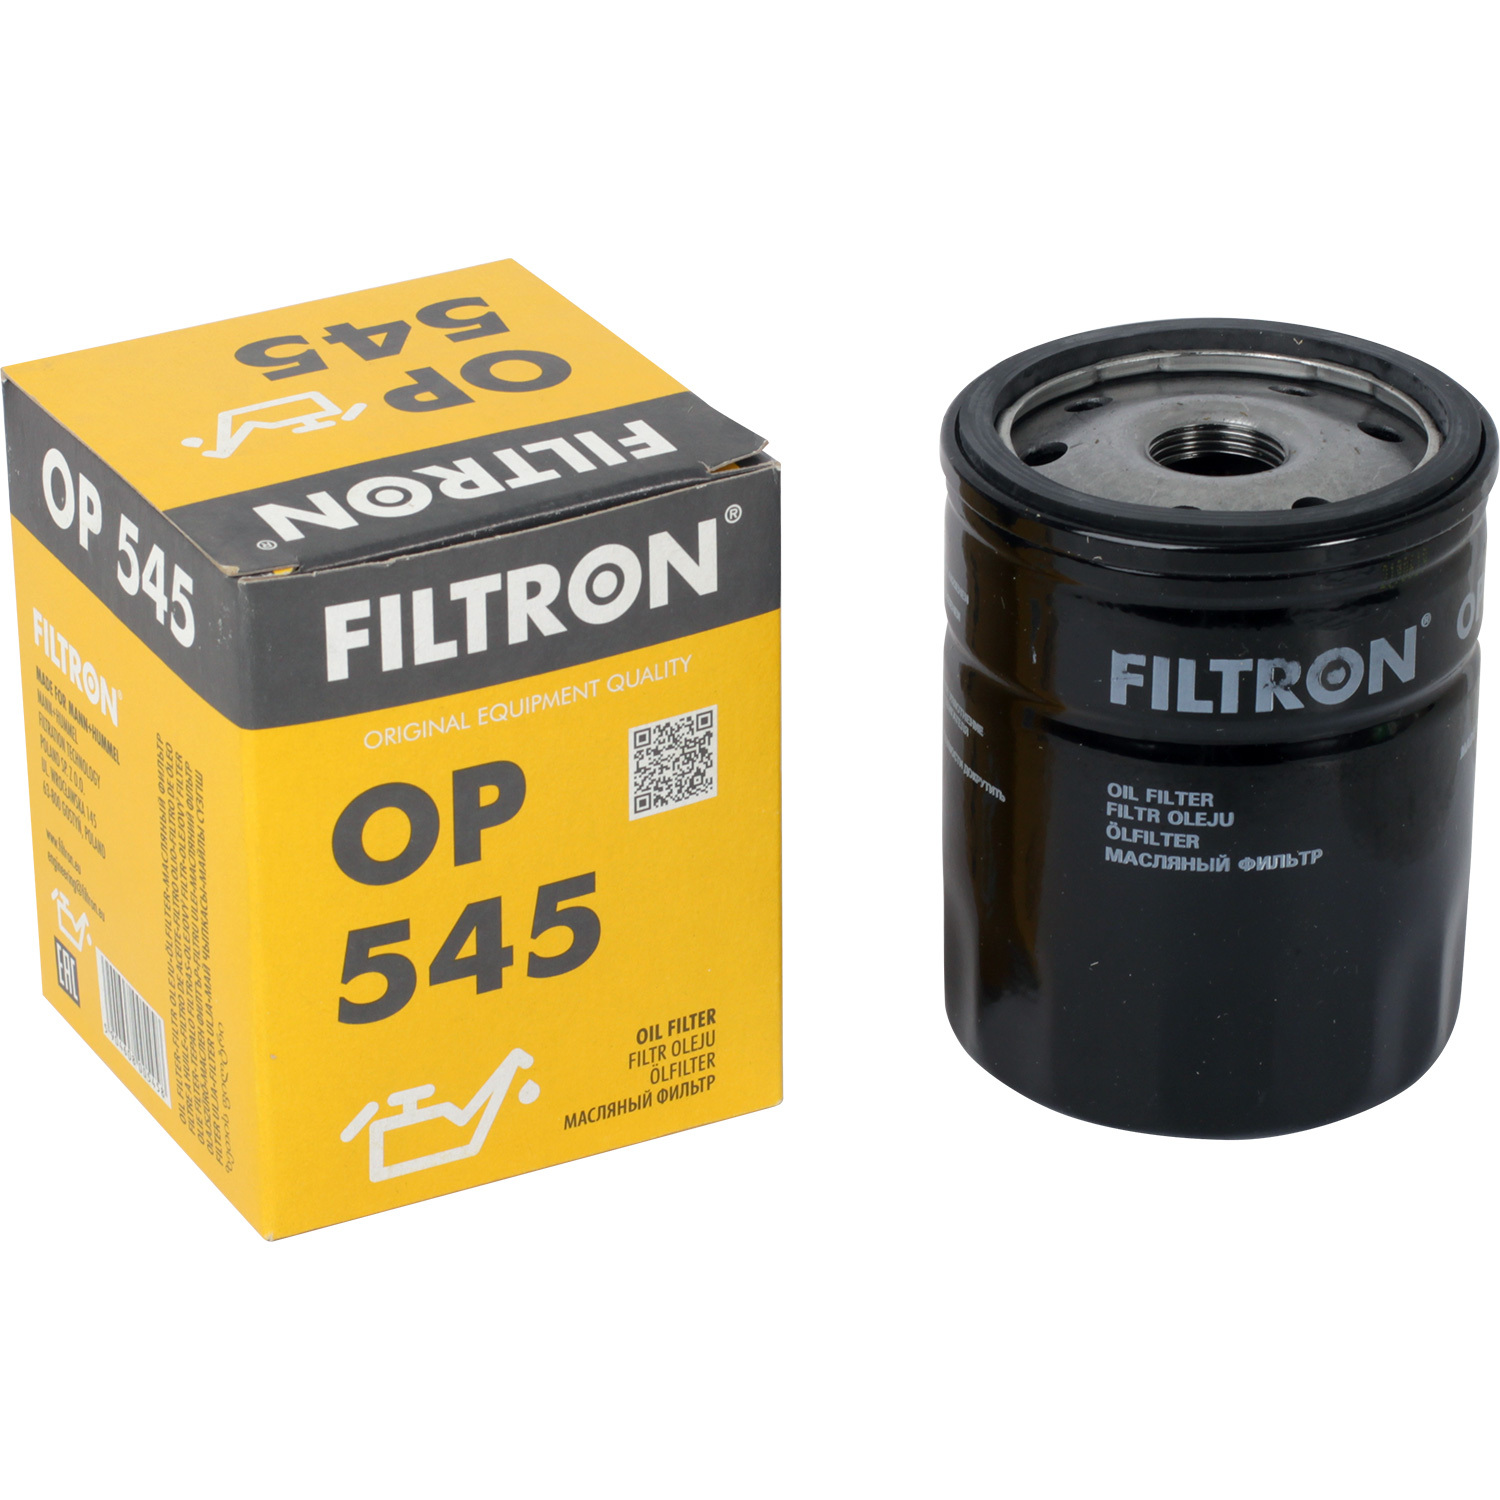 фильтры filtron фильтр масляный filtron op6291 Фильтры Filtron Фильтр масляный Filtron OP545